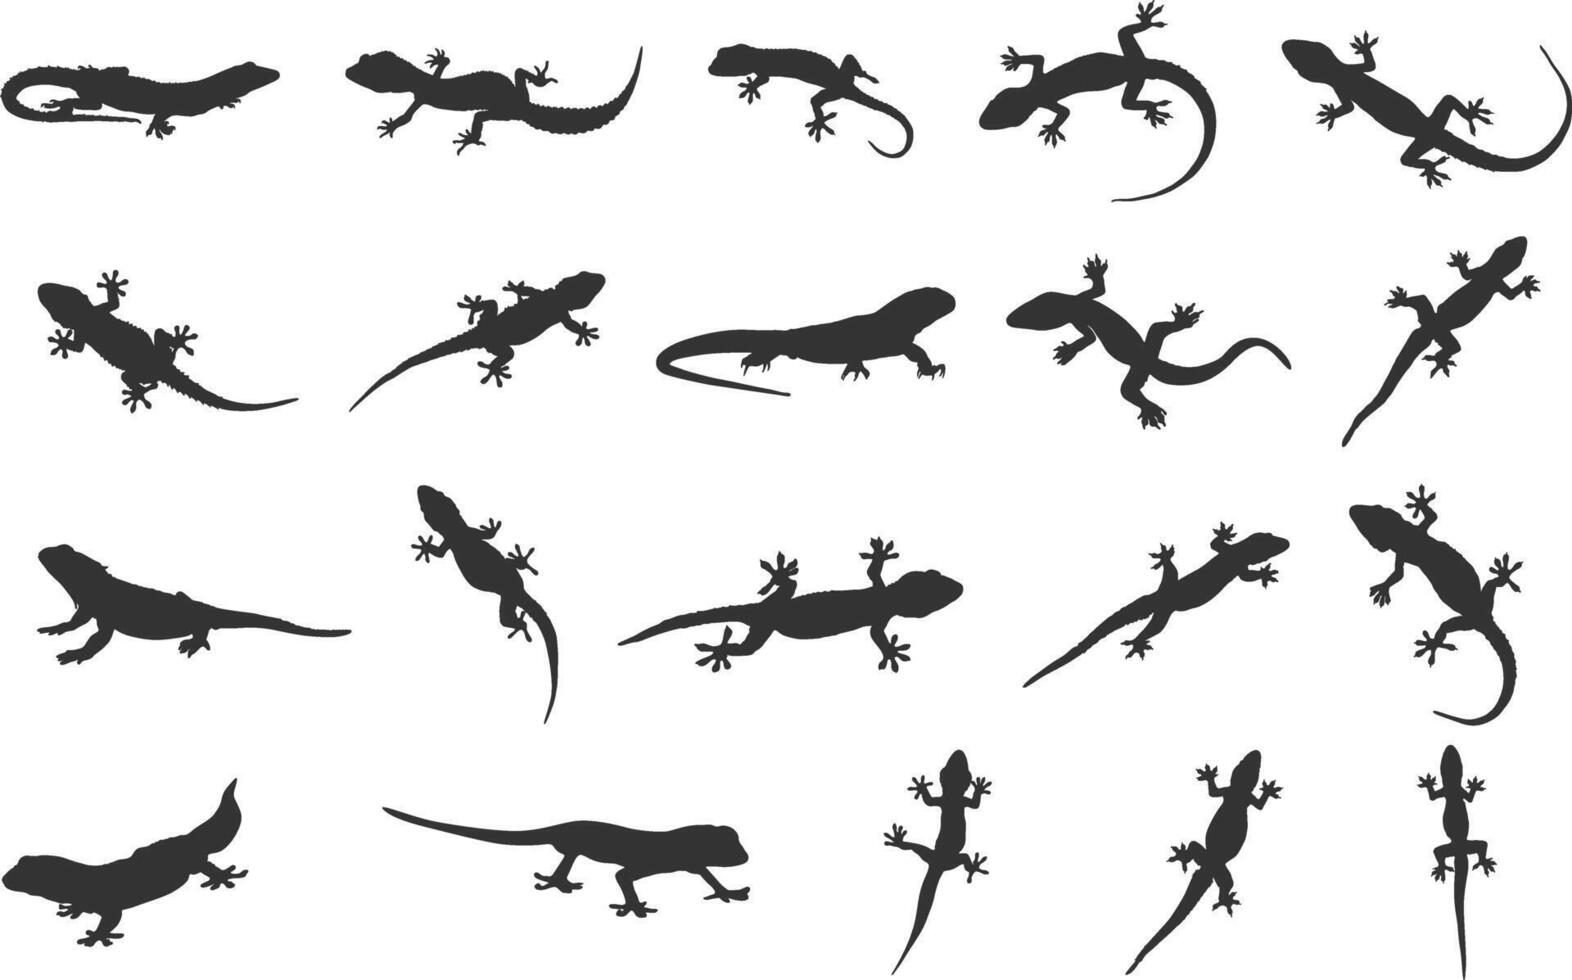 Lizard silhouette, Gecko lizard silhouette, Gecko silhouettes, Gecko lizard clipart, Lizard vector set